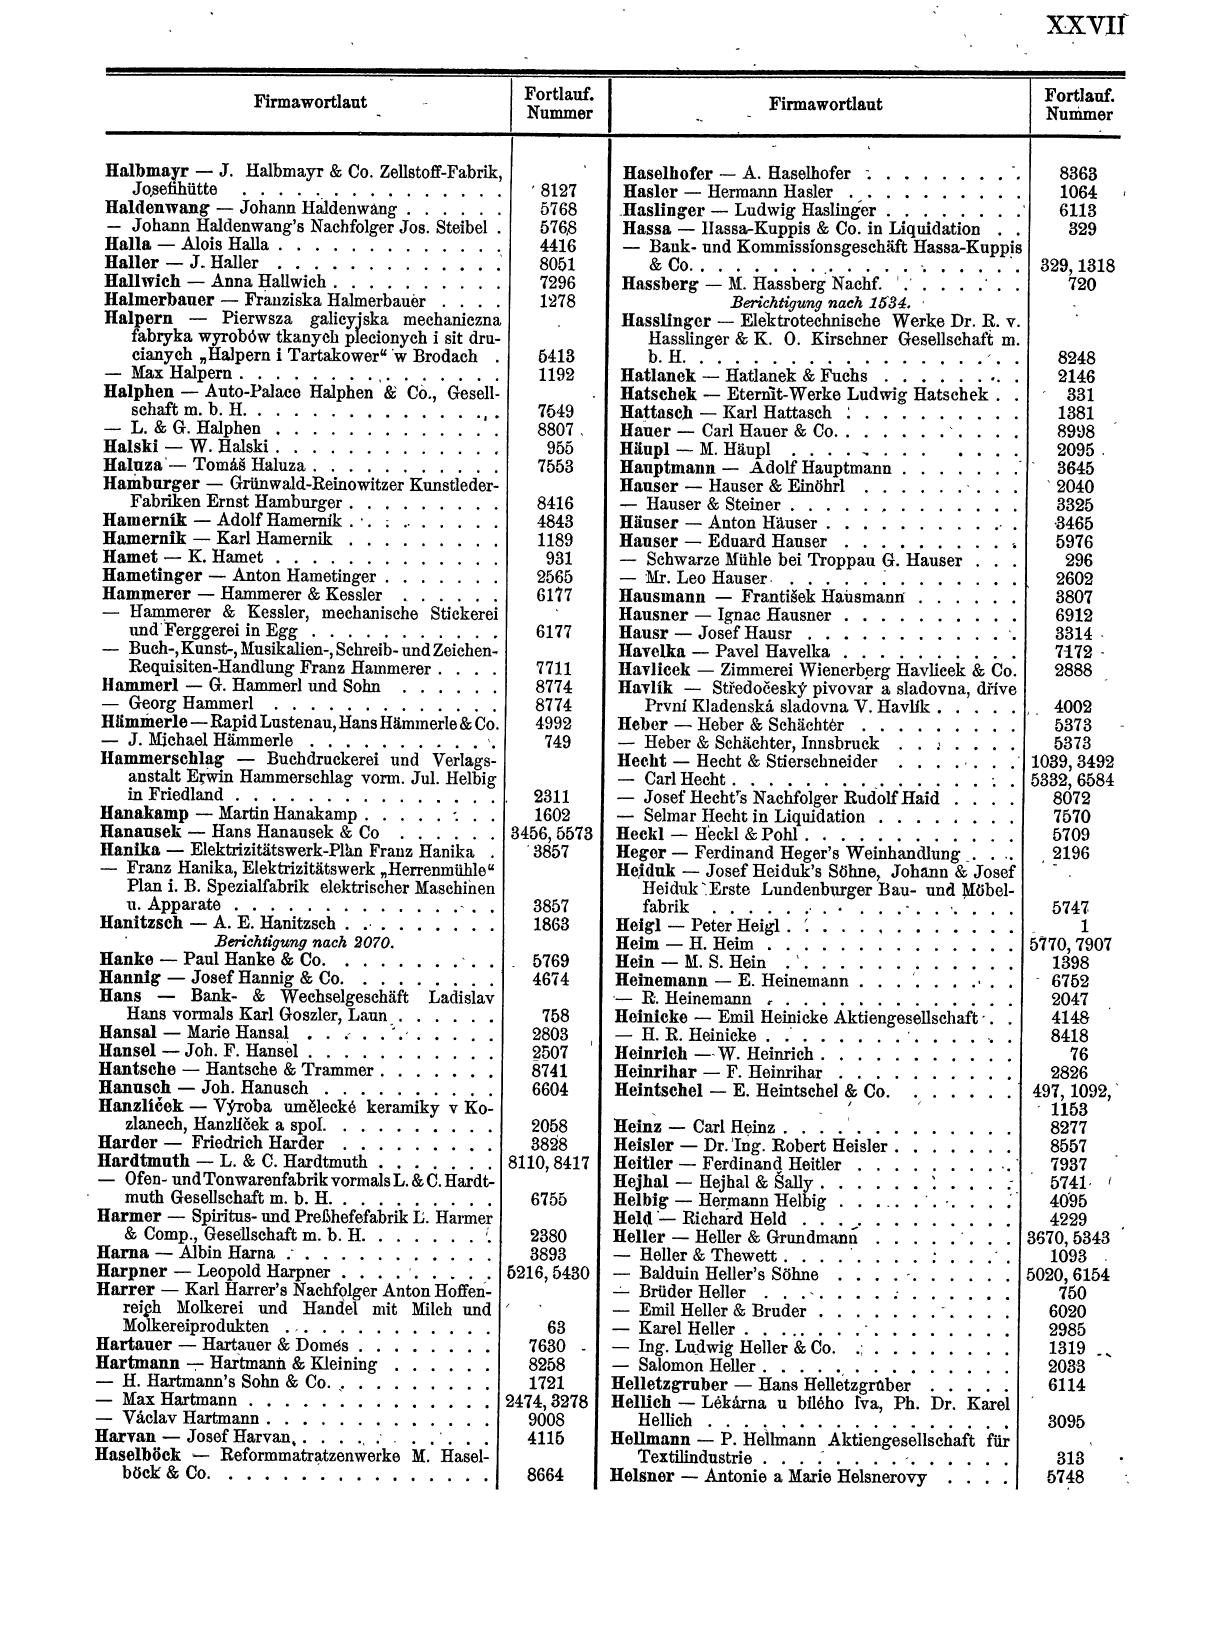 Zentralblatt für die Eintragungen in das Handelsregister 1913, Teil 1 - Seite 35